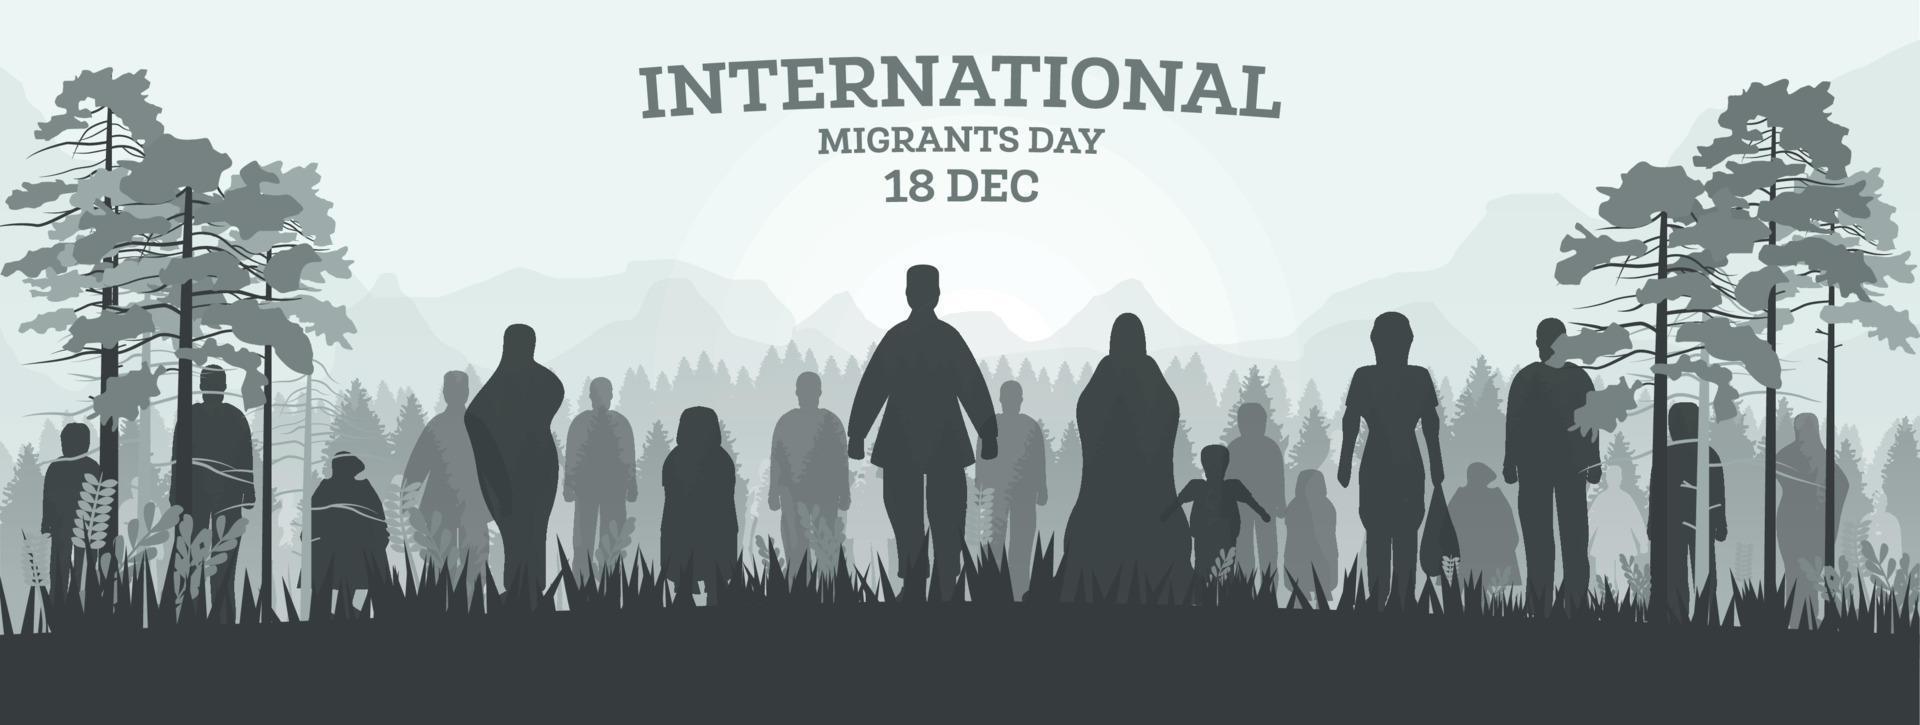 Internationaler Tag der Migranten 18. Dezember. webbanner mit silhouetten von flüchtlingen im wald. vektor